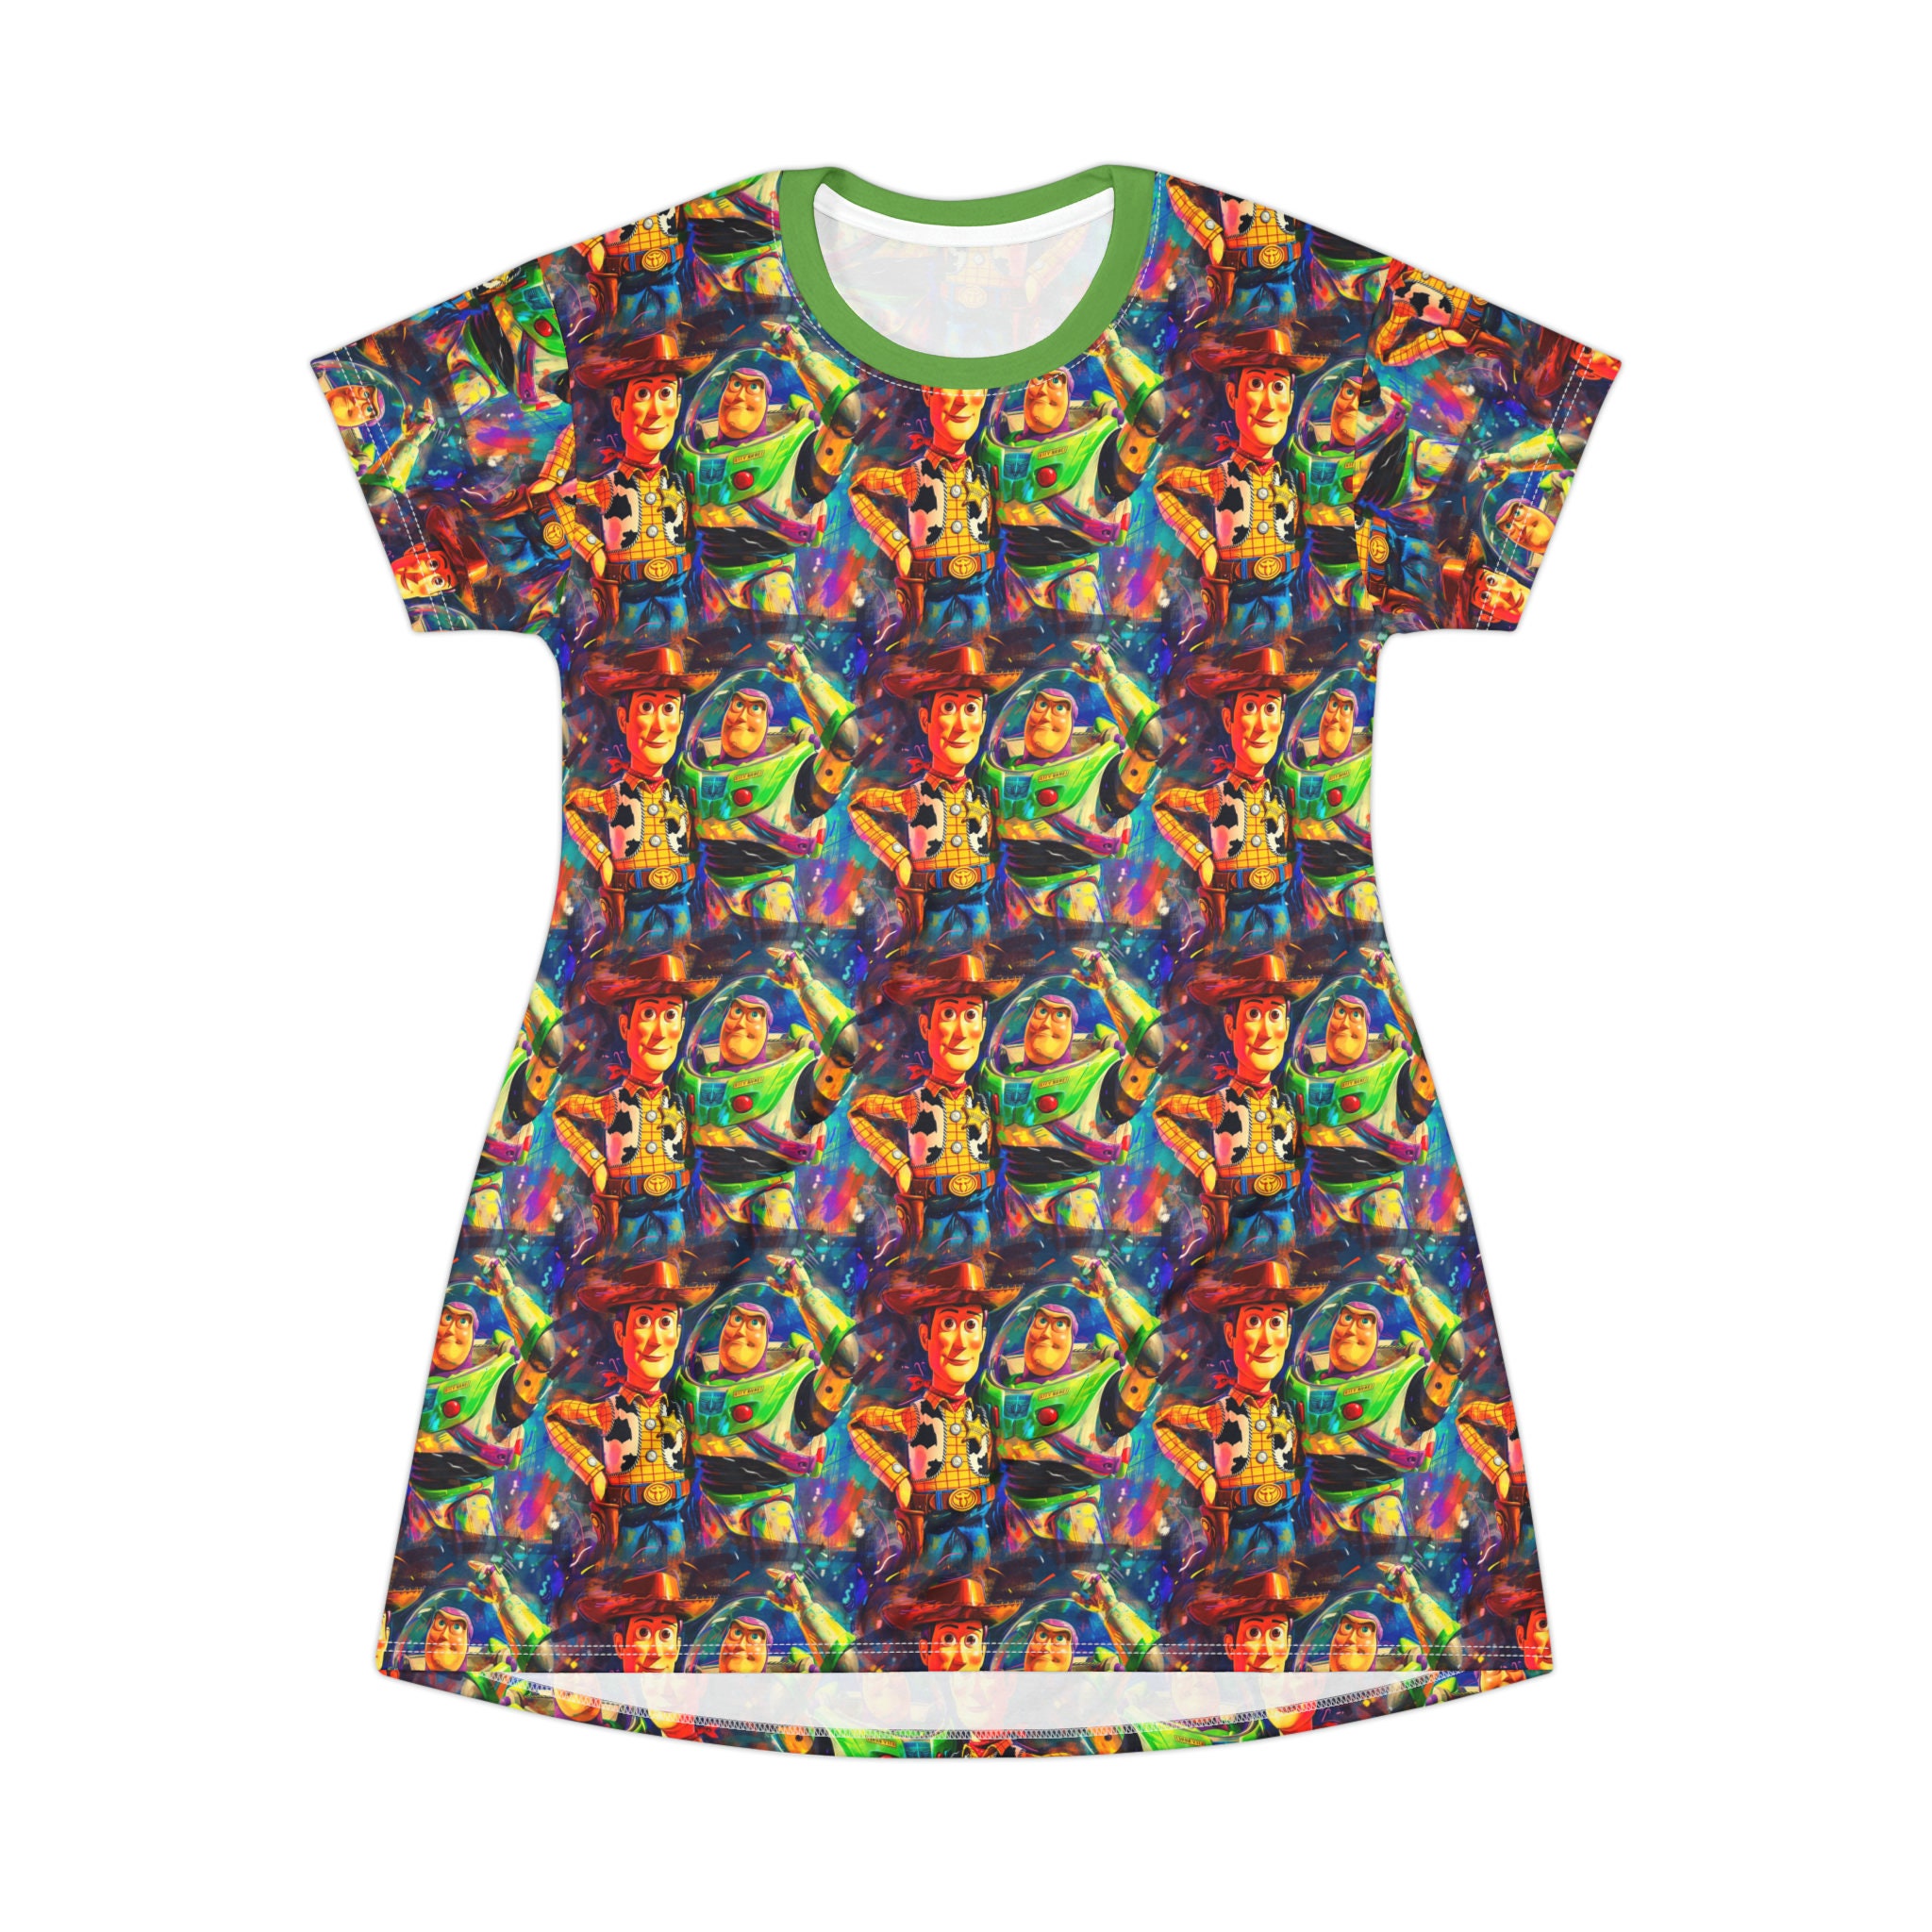 Toy Story Disney T-Shirt Dress, Cartoon Women's T-Shirt Dress